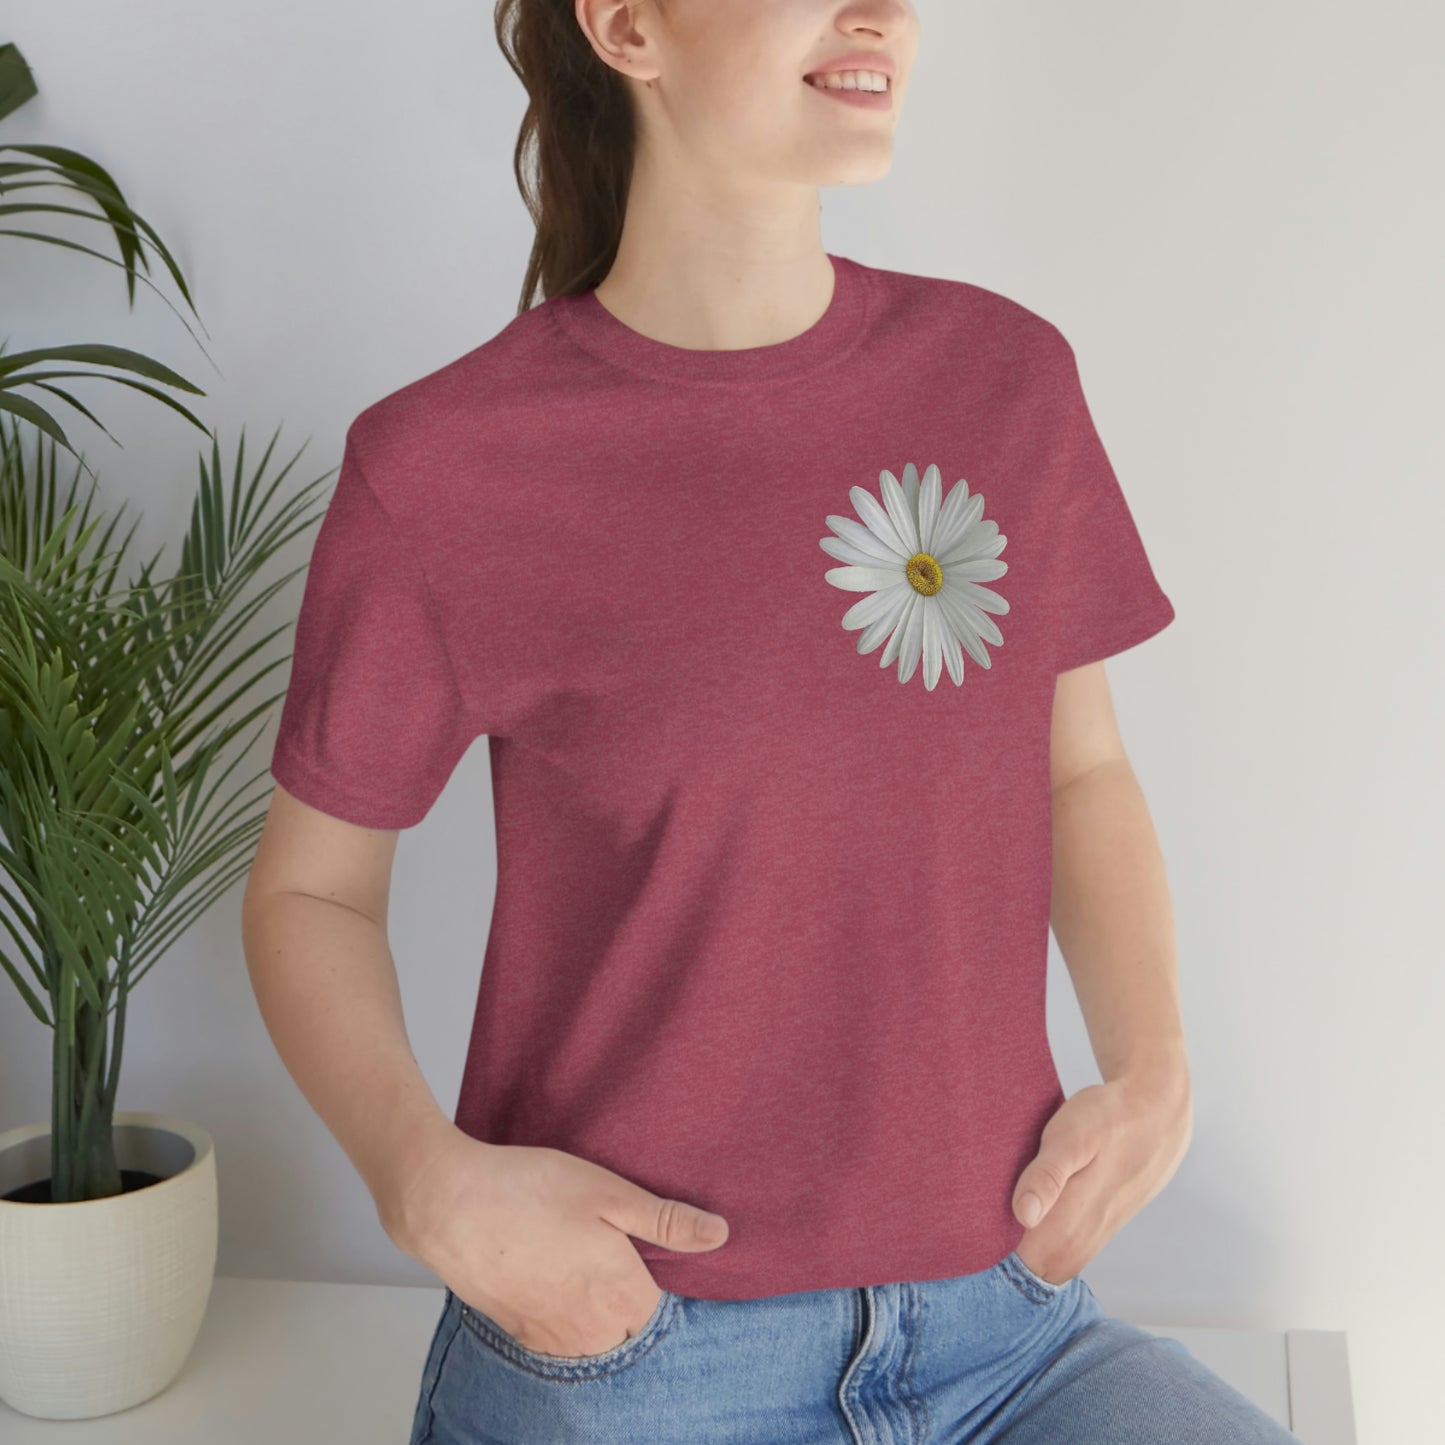 Daisy Shirt Floral Shirt Gift,  Boho Shirt, Birth Month Flower, Gift For Mom, Daisy Women Shirt Flower Tee Summer Shirt,